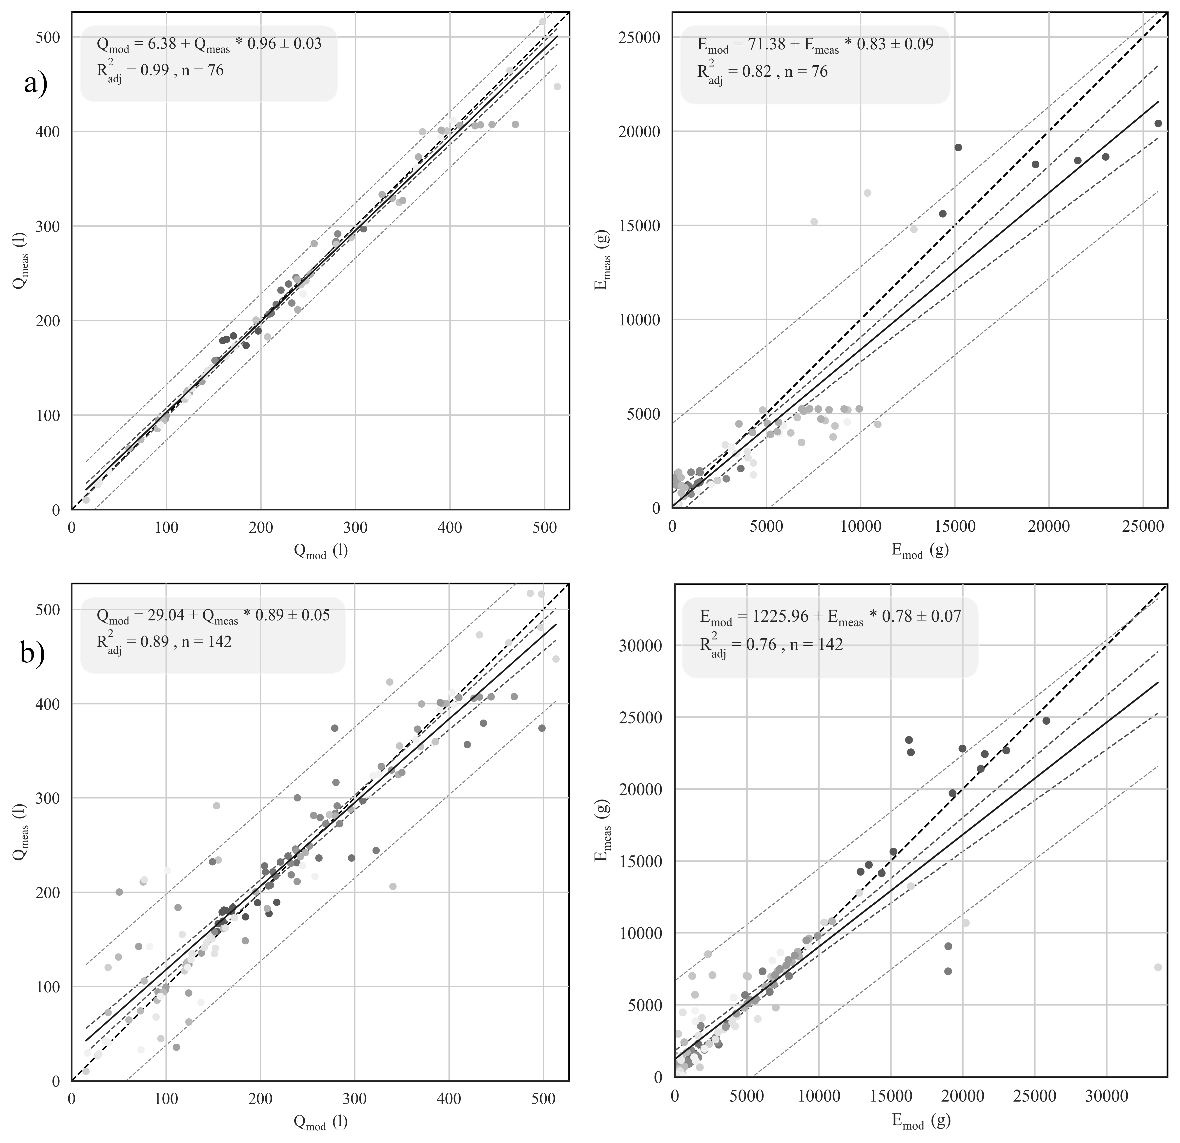 Kalibrierungsergebnisse: Gegenüberstellung von modellierten und gemessenen Oberflächenabflüssen und Bodenabträgen